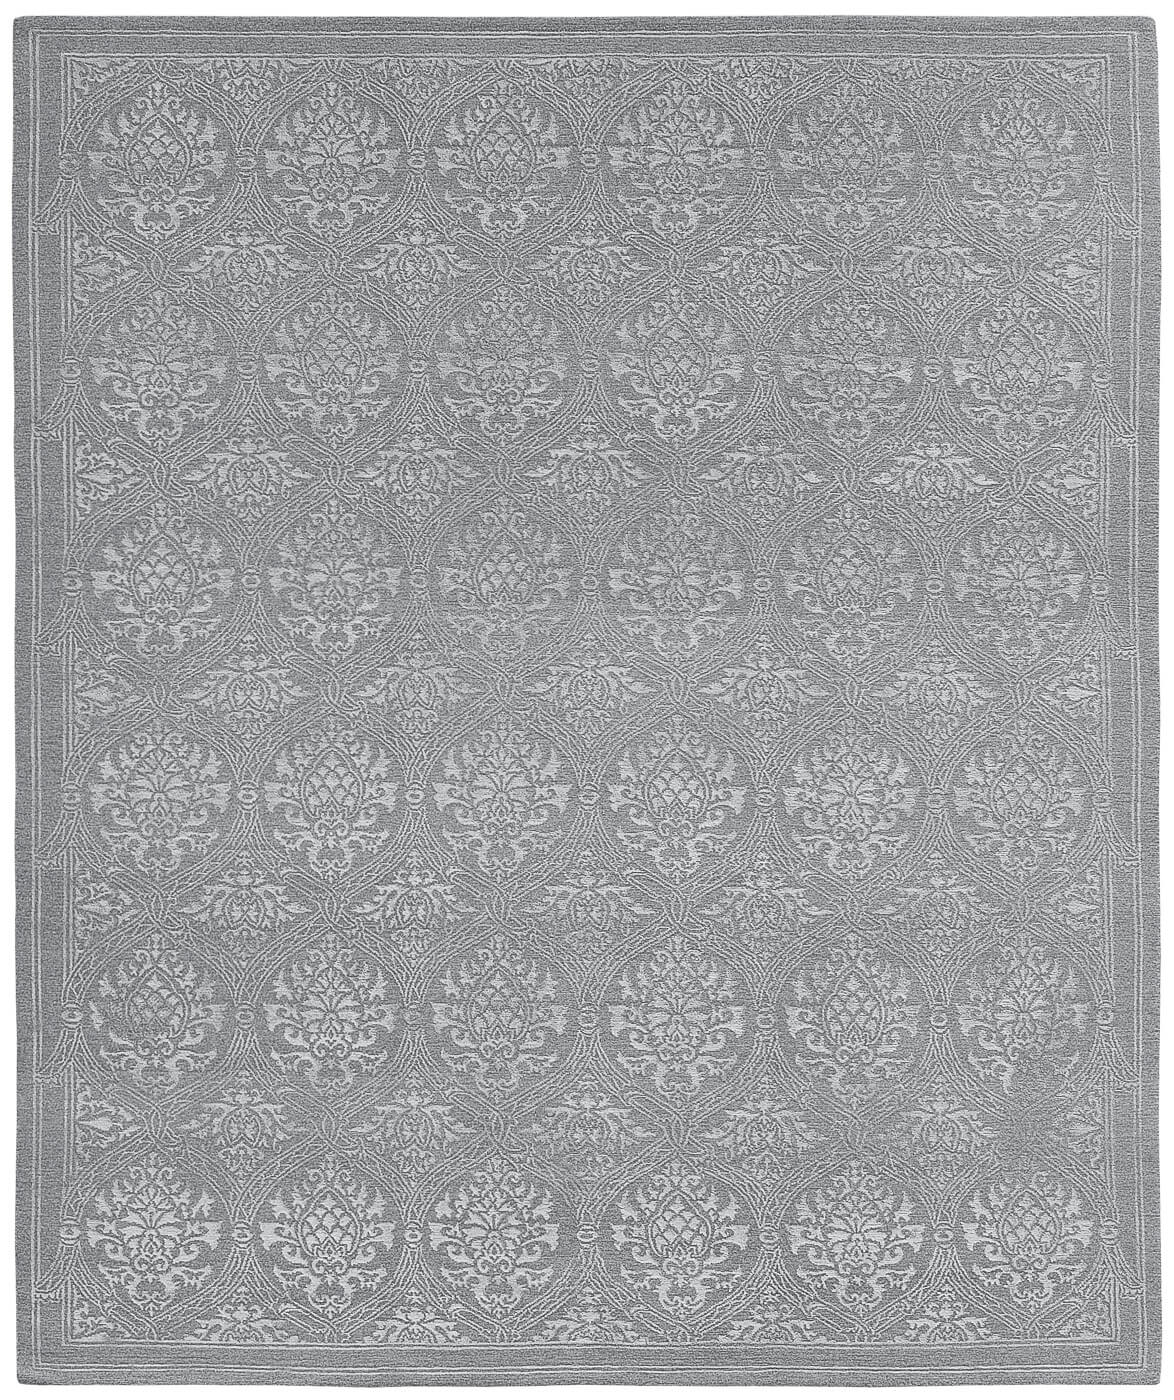 Sanssouci Grey Luxury Hand-woven Rug ☞ Size: 250 x 300 cm